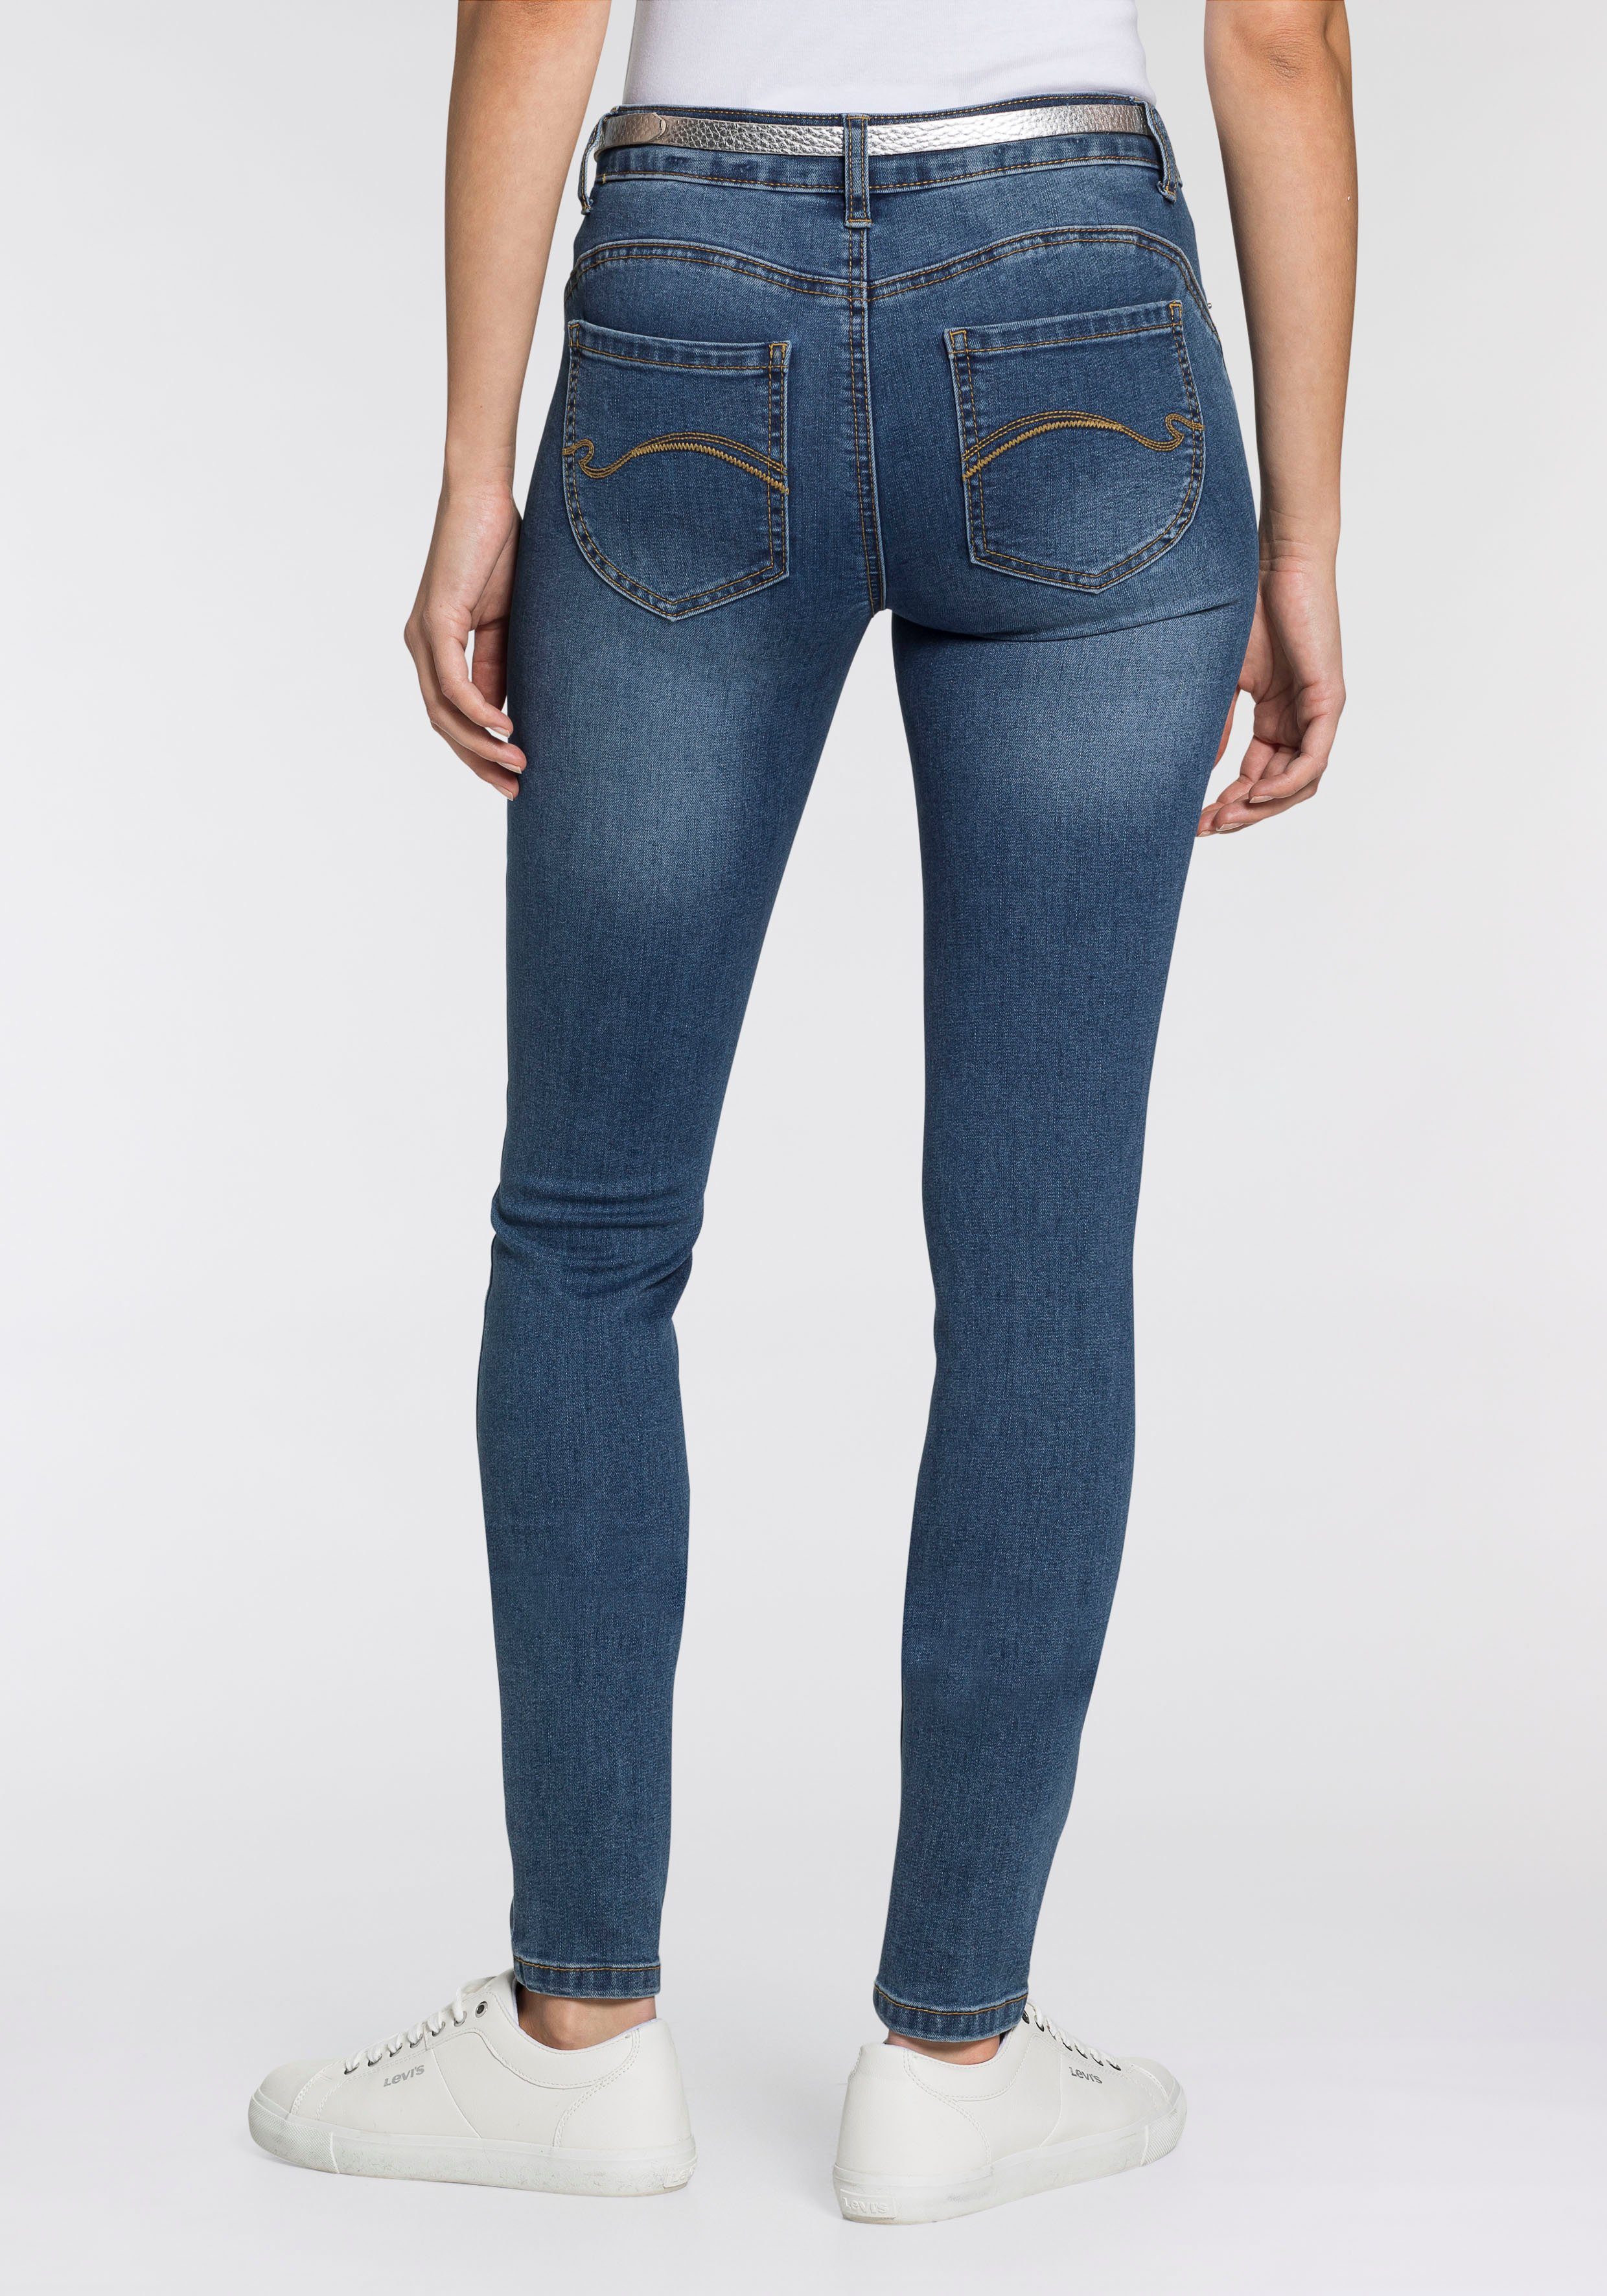 SKINNY KangaROOS 5-Pocket-Jeans PUSH-UP Shaping-Effekt mit